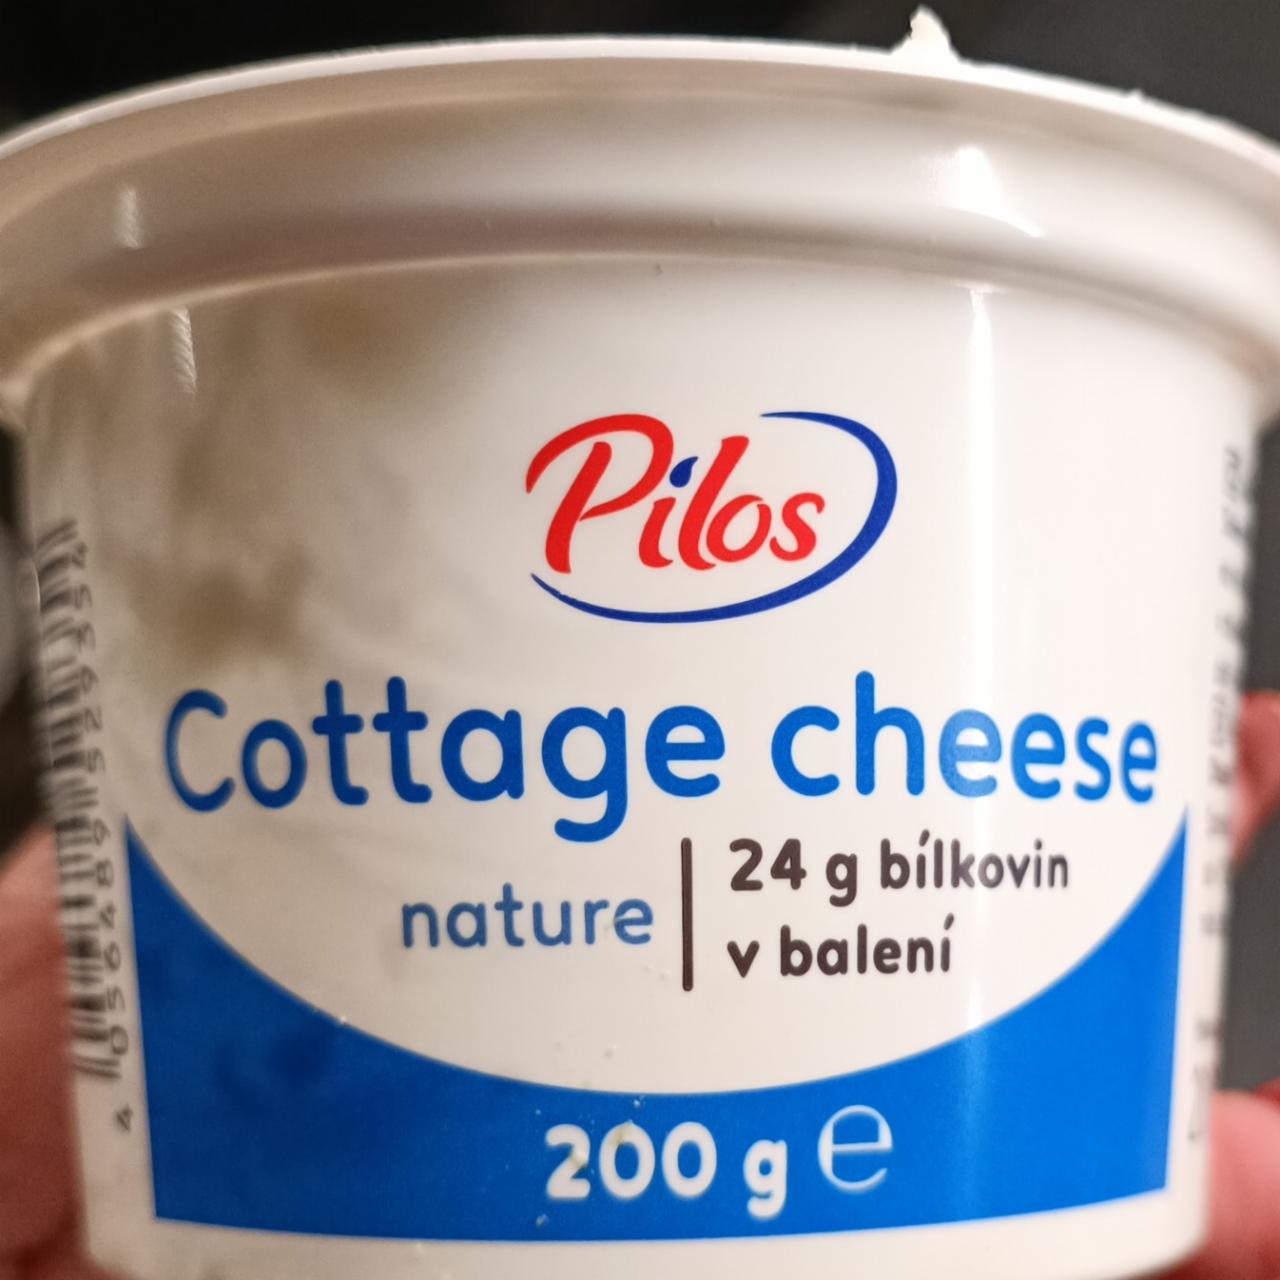 Képek - Cottage cheese nature Pilos